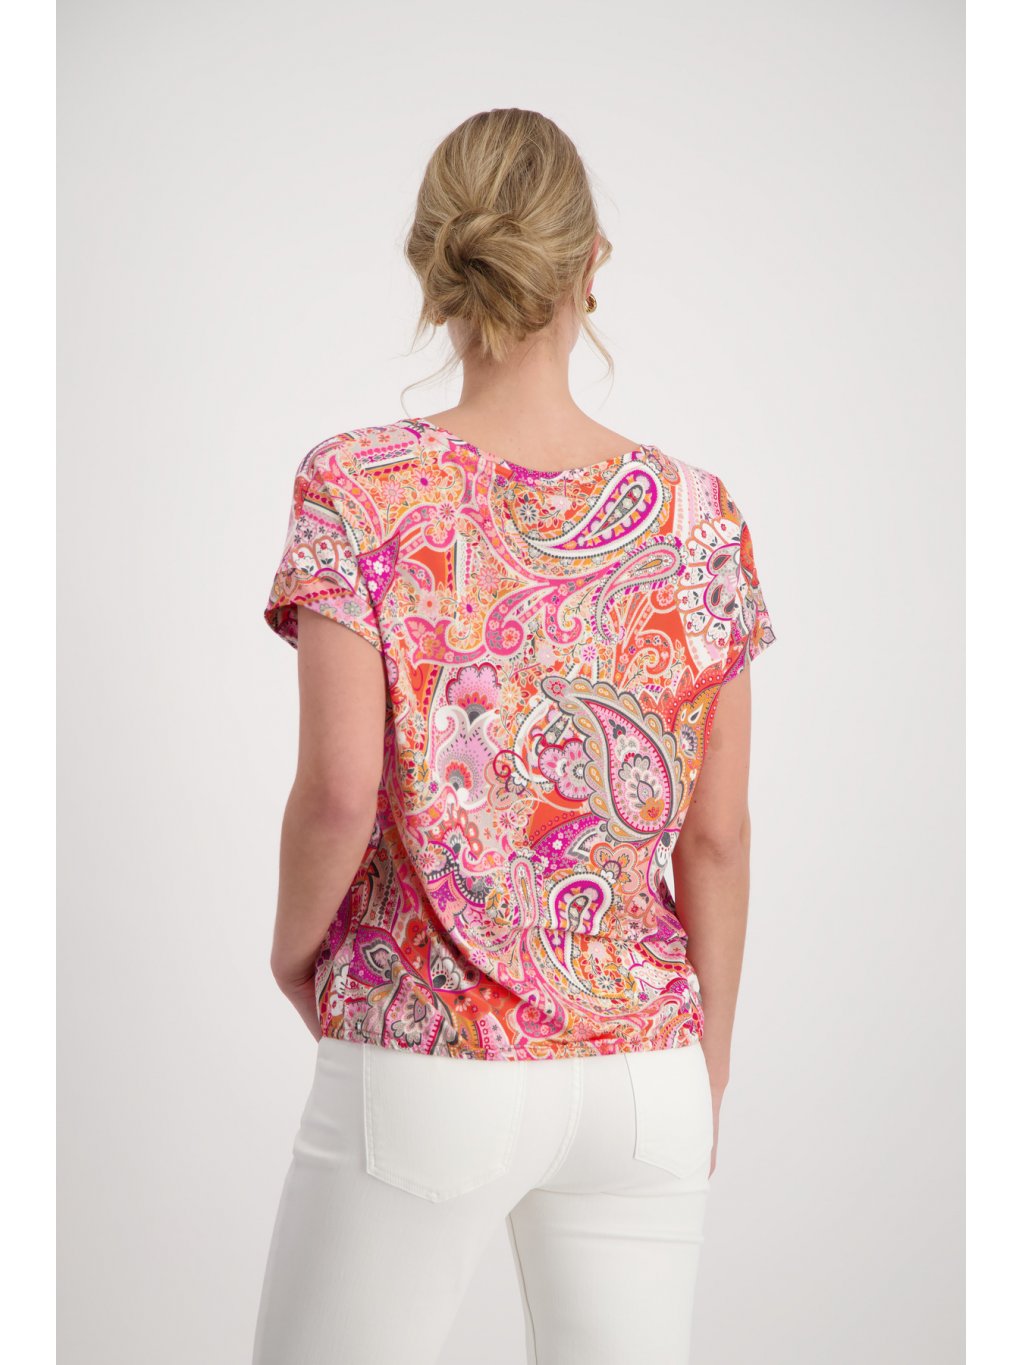 Tričko Monari 9002 meruňkovo růžové paisley vzor s gumičkou